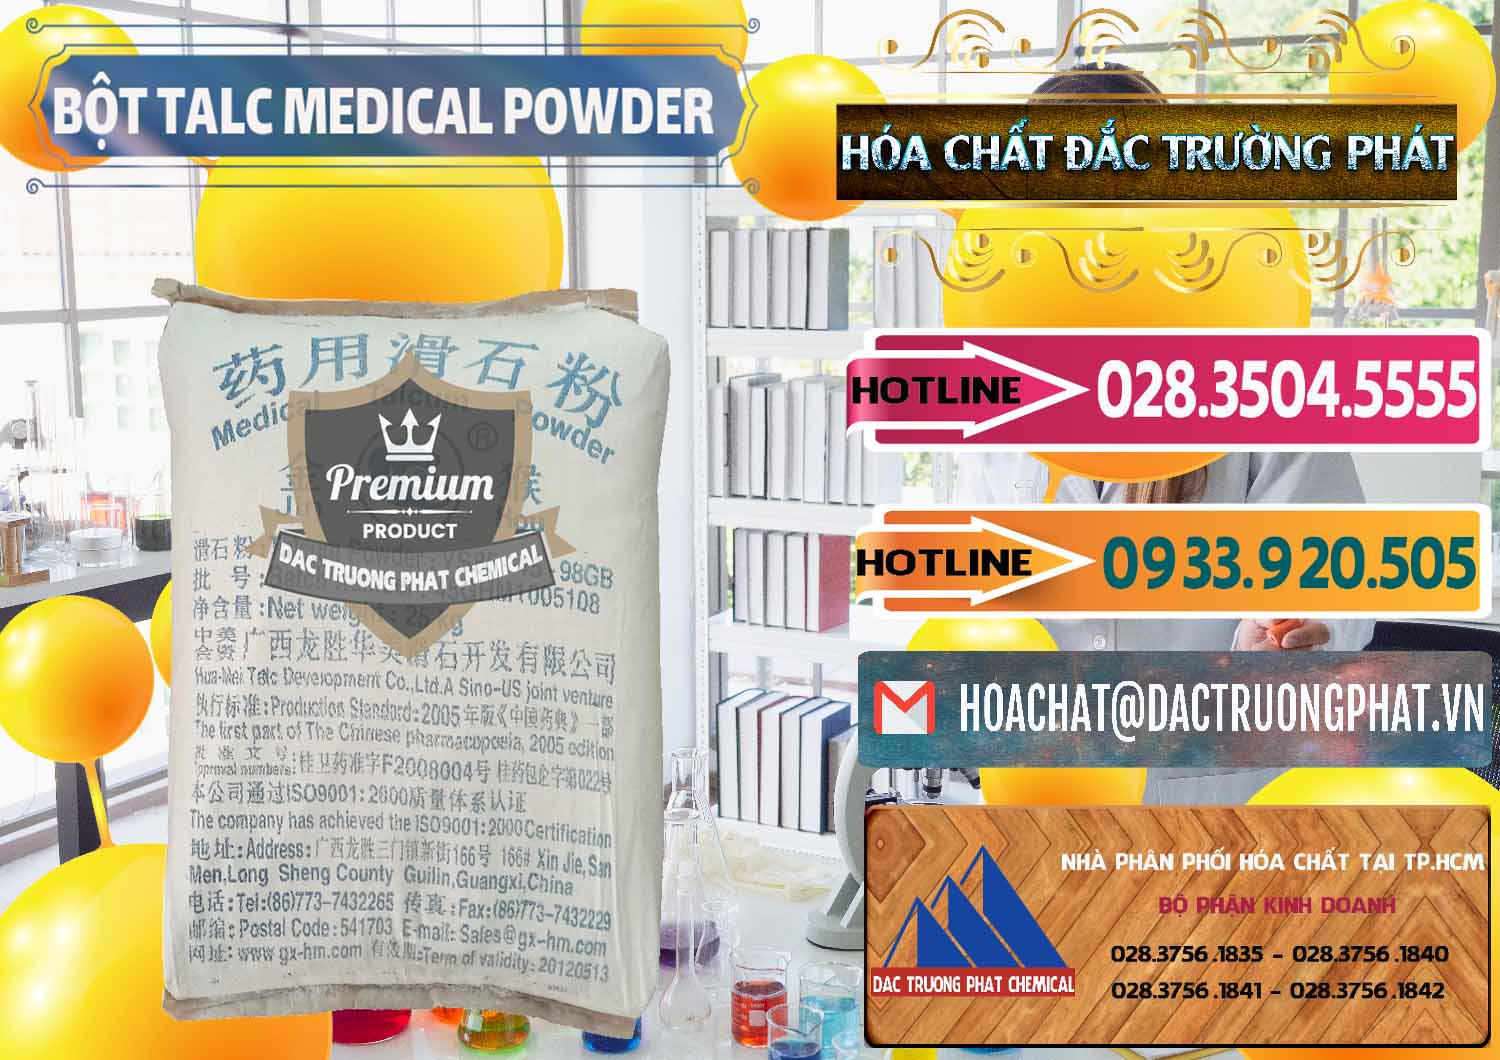 Nơi bán ( phân phối ) Bột Talc Medical Powder Trung Quốc China - 0036 - Nhà phân phối ( bán ) hóa chất tại TP.HCM - dactruongphat.vn